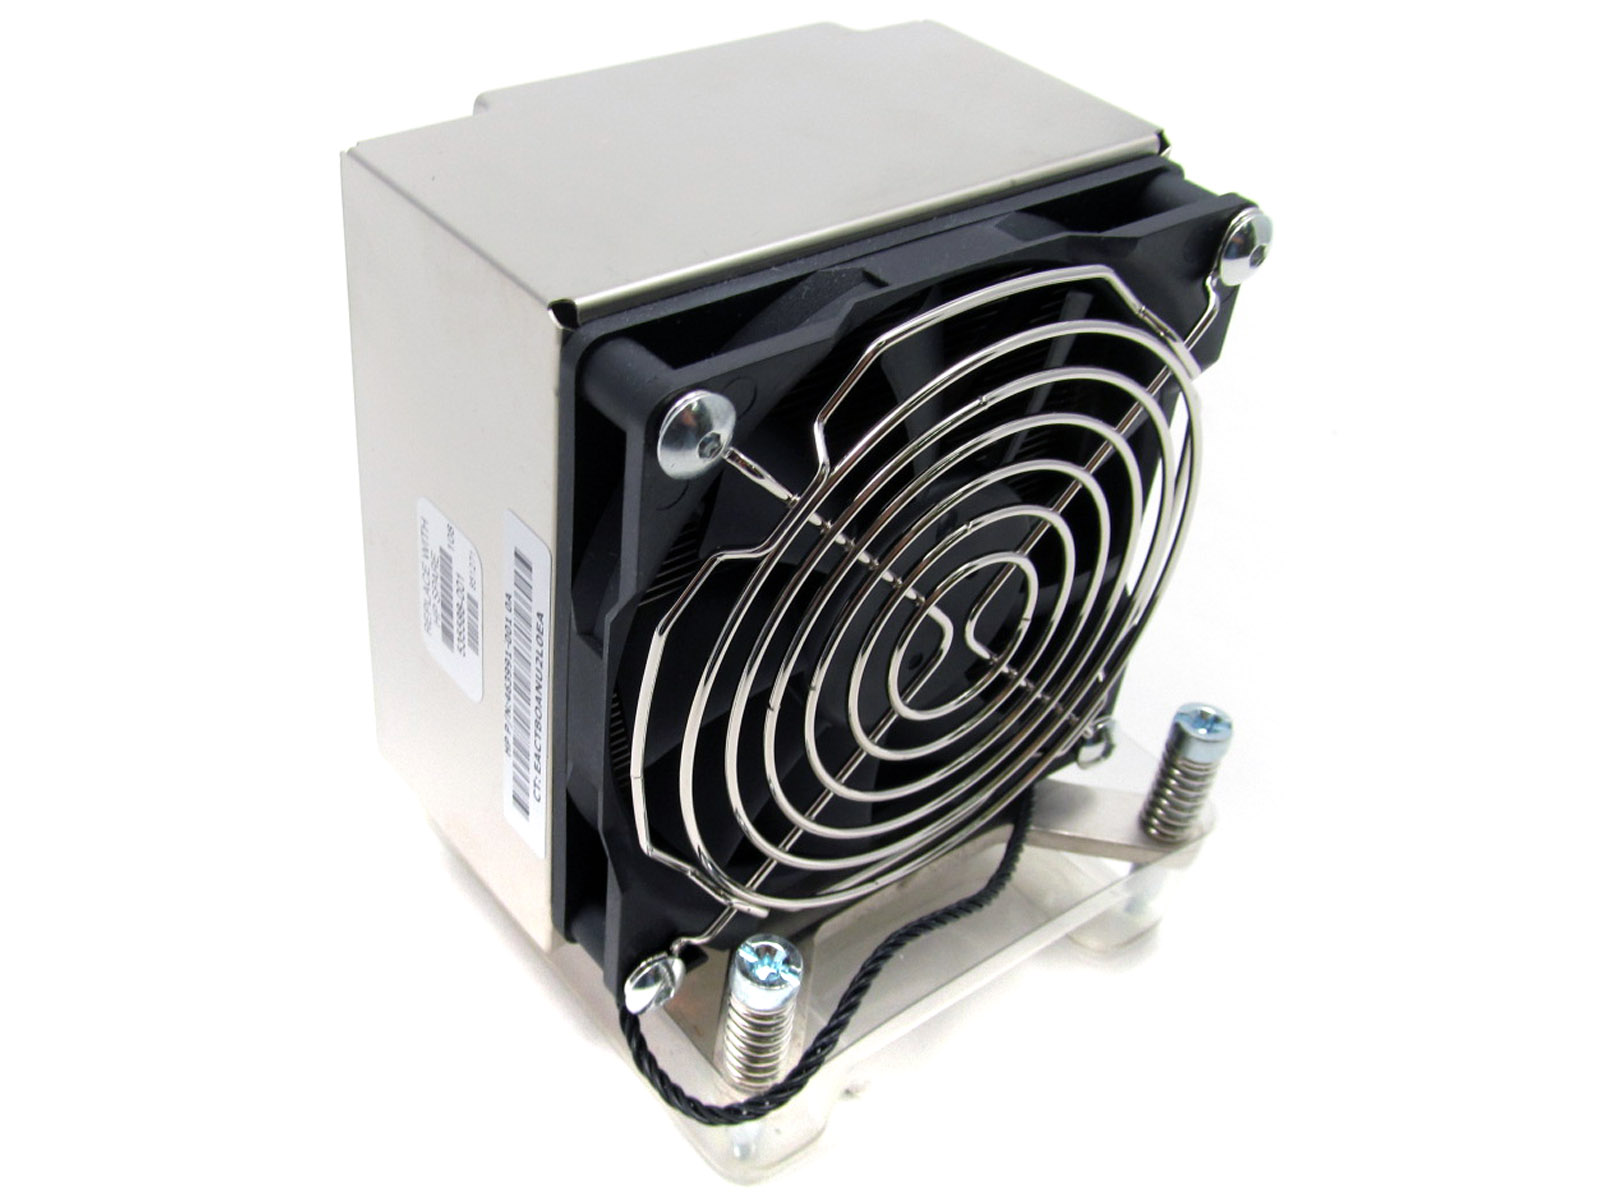 Z800 90W heatsink and fan